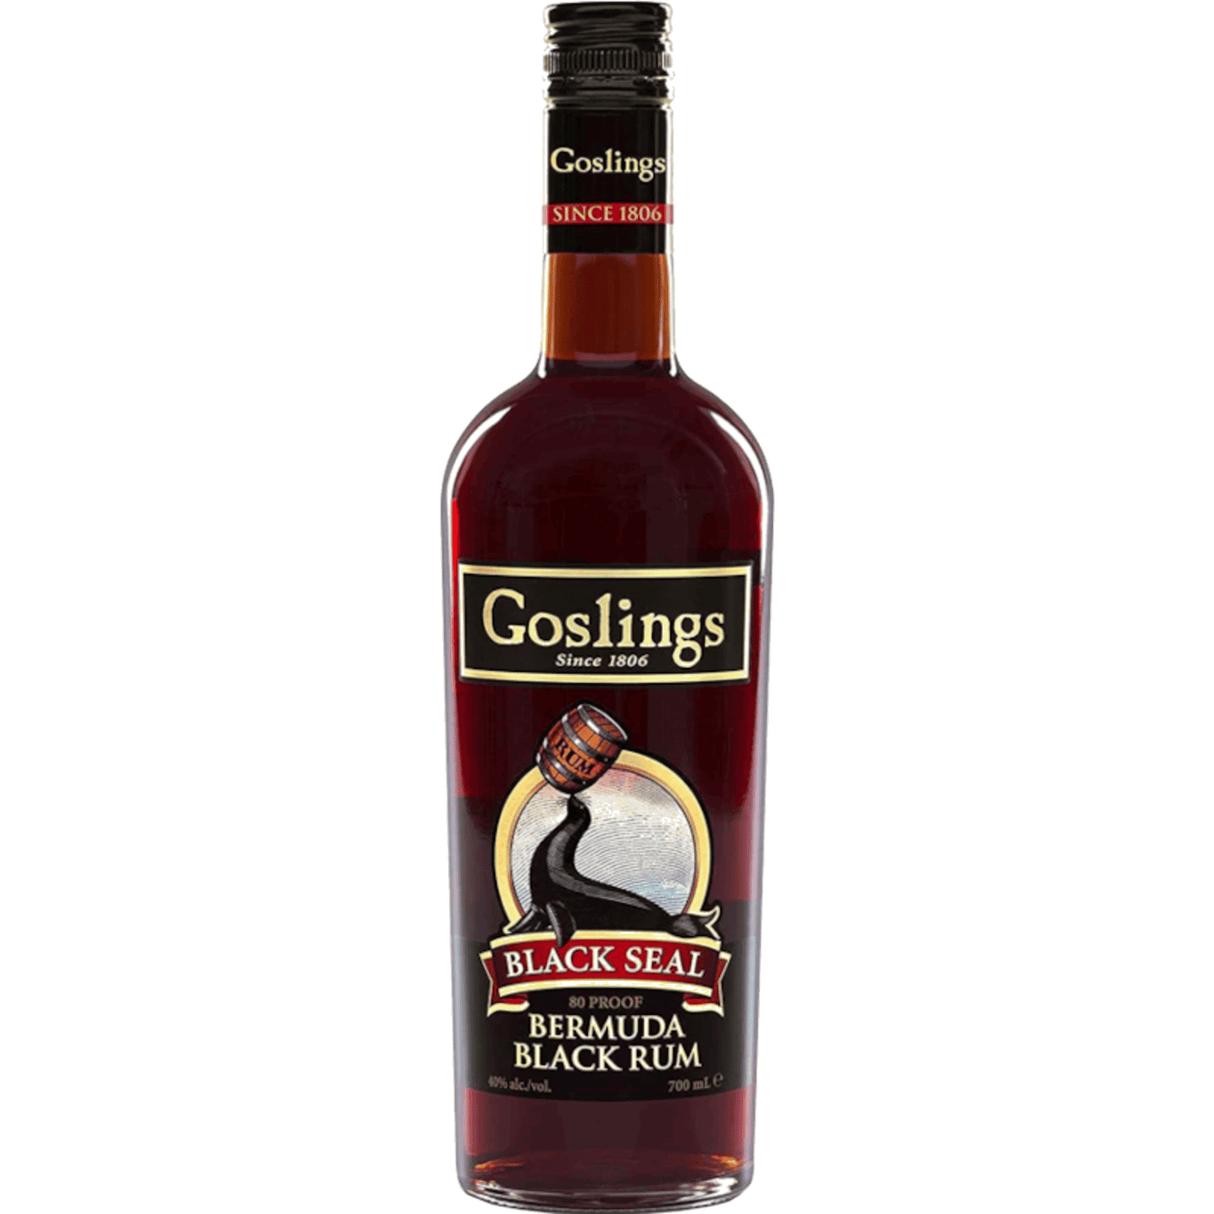 Goslings Black Seal Bermuda Rum 700ml